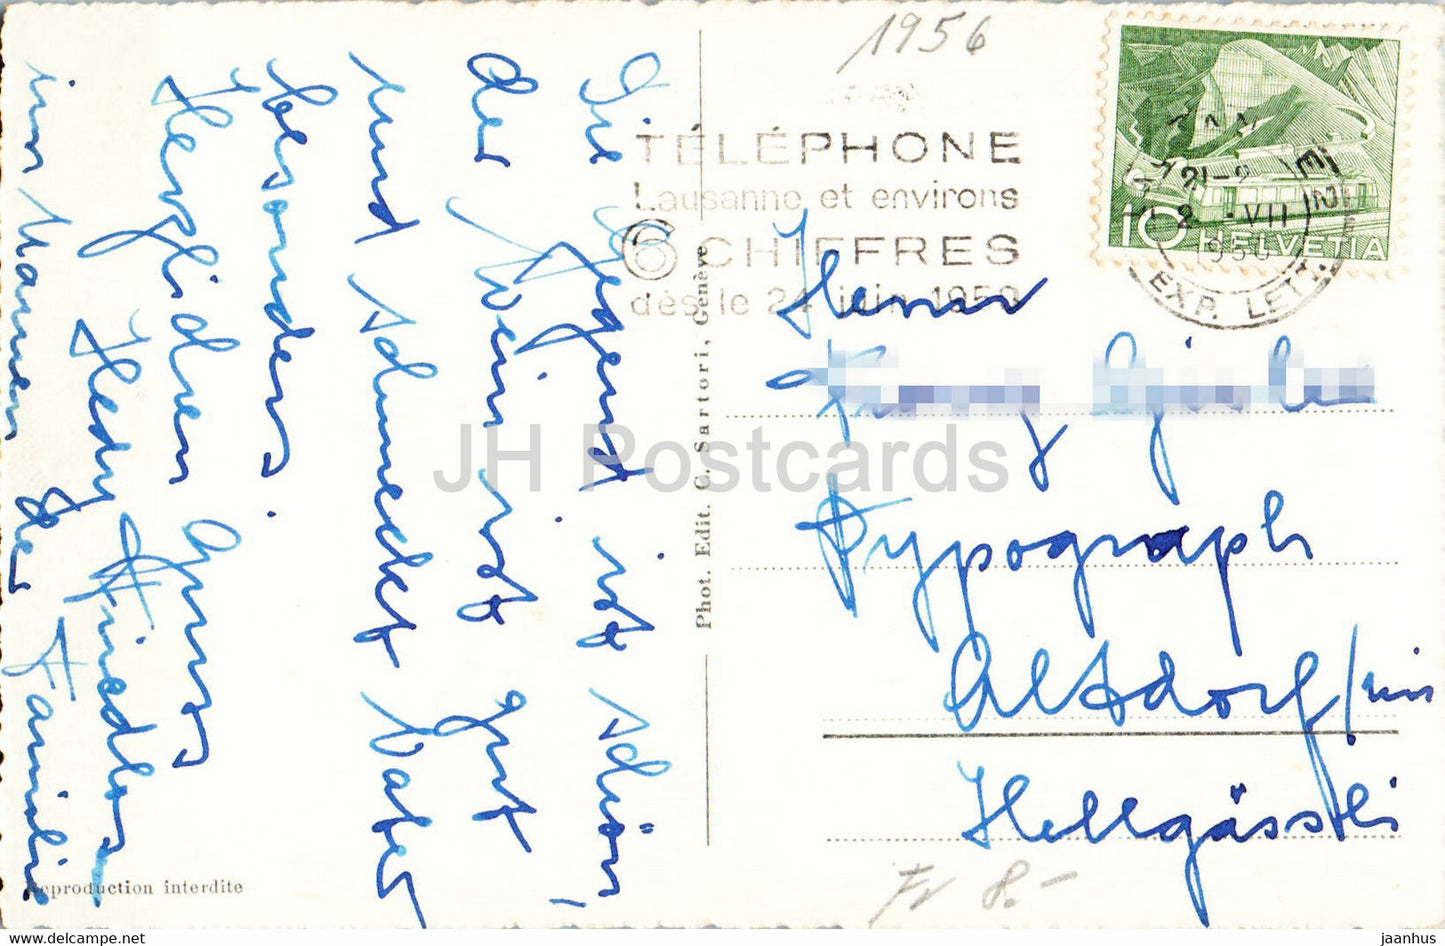 Ouchy - Vue aerienne - Luftaufnahme - 460 - 1956 - alte Postkarte - Schweiz - gebraucht